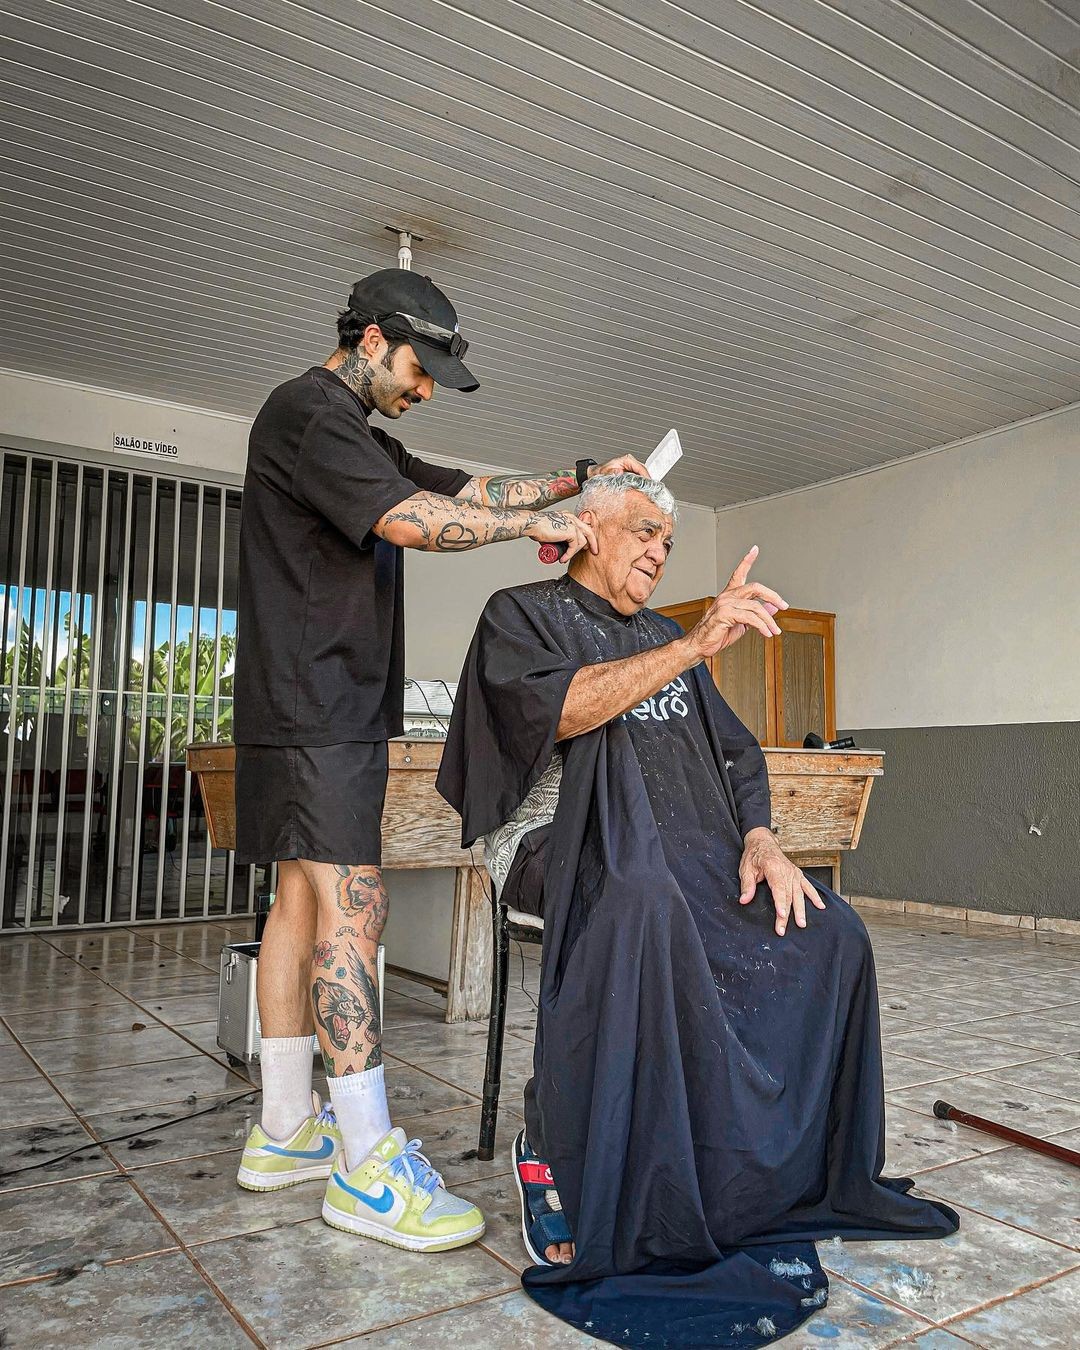 Barbeiro resgata autoestima em lar de idosos cortando cabelo de graça: 'É estar junto compartilhando amor'